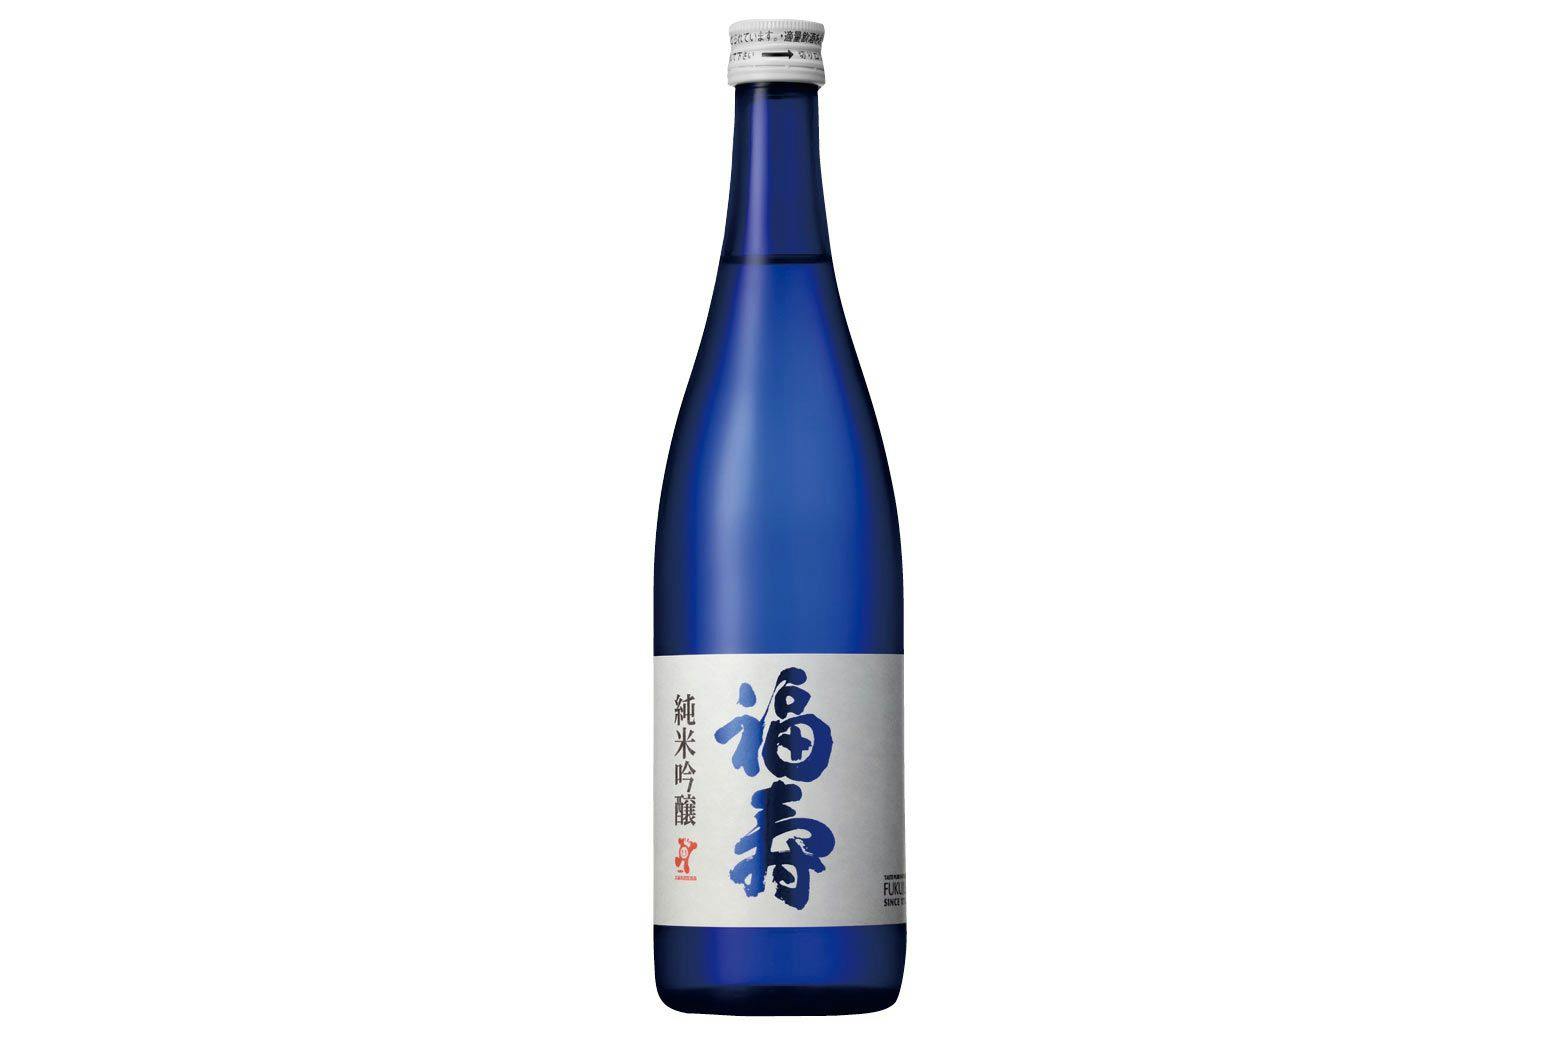 Fukuju “Blue”